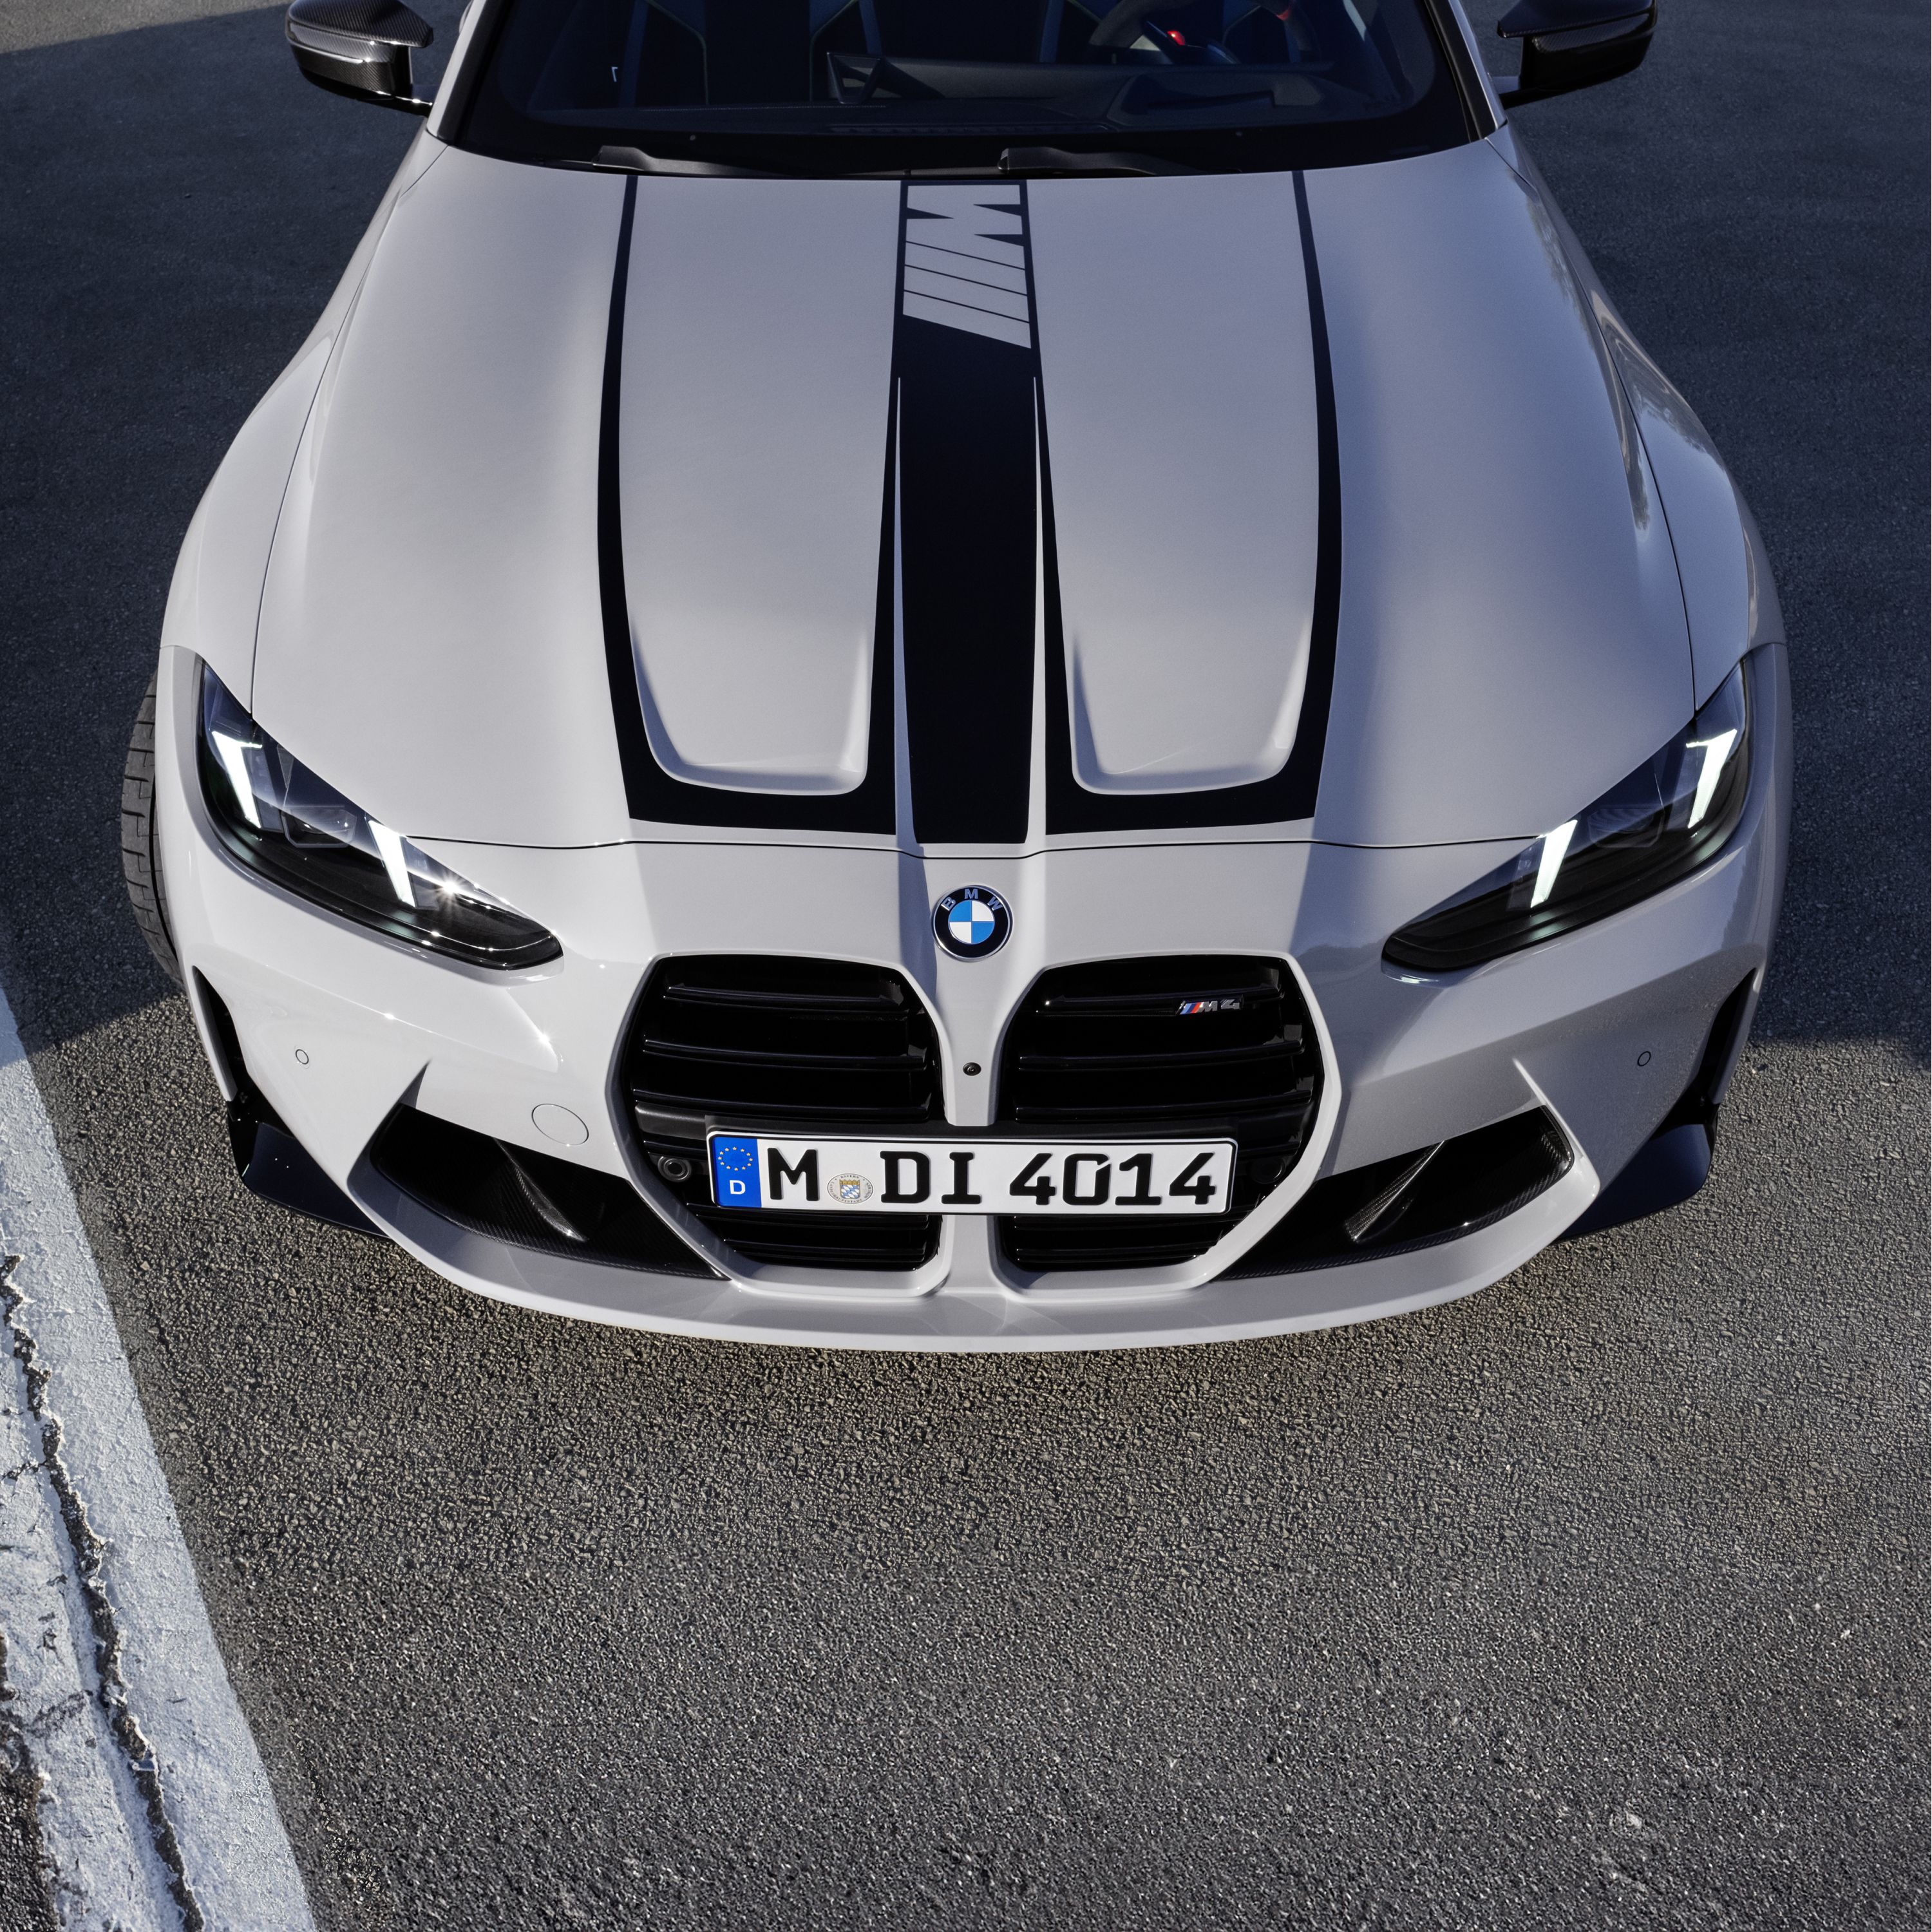 Financiación y leasing en la gama BMW Serie 4 Coupé M